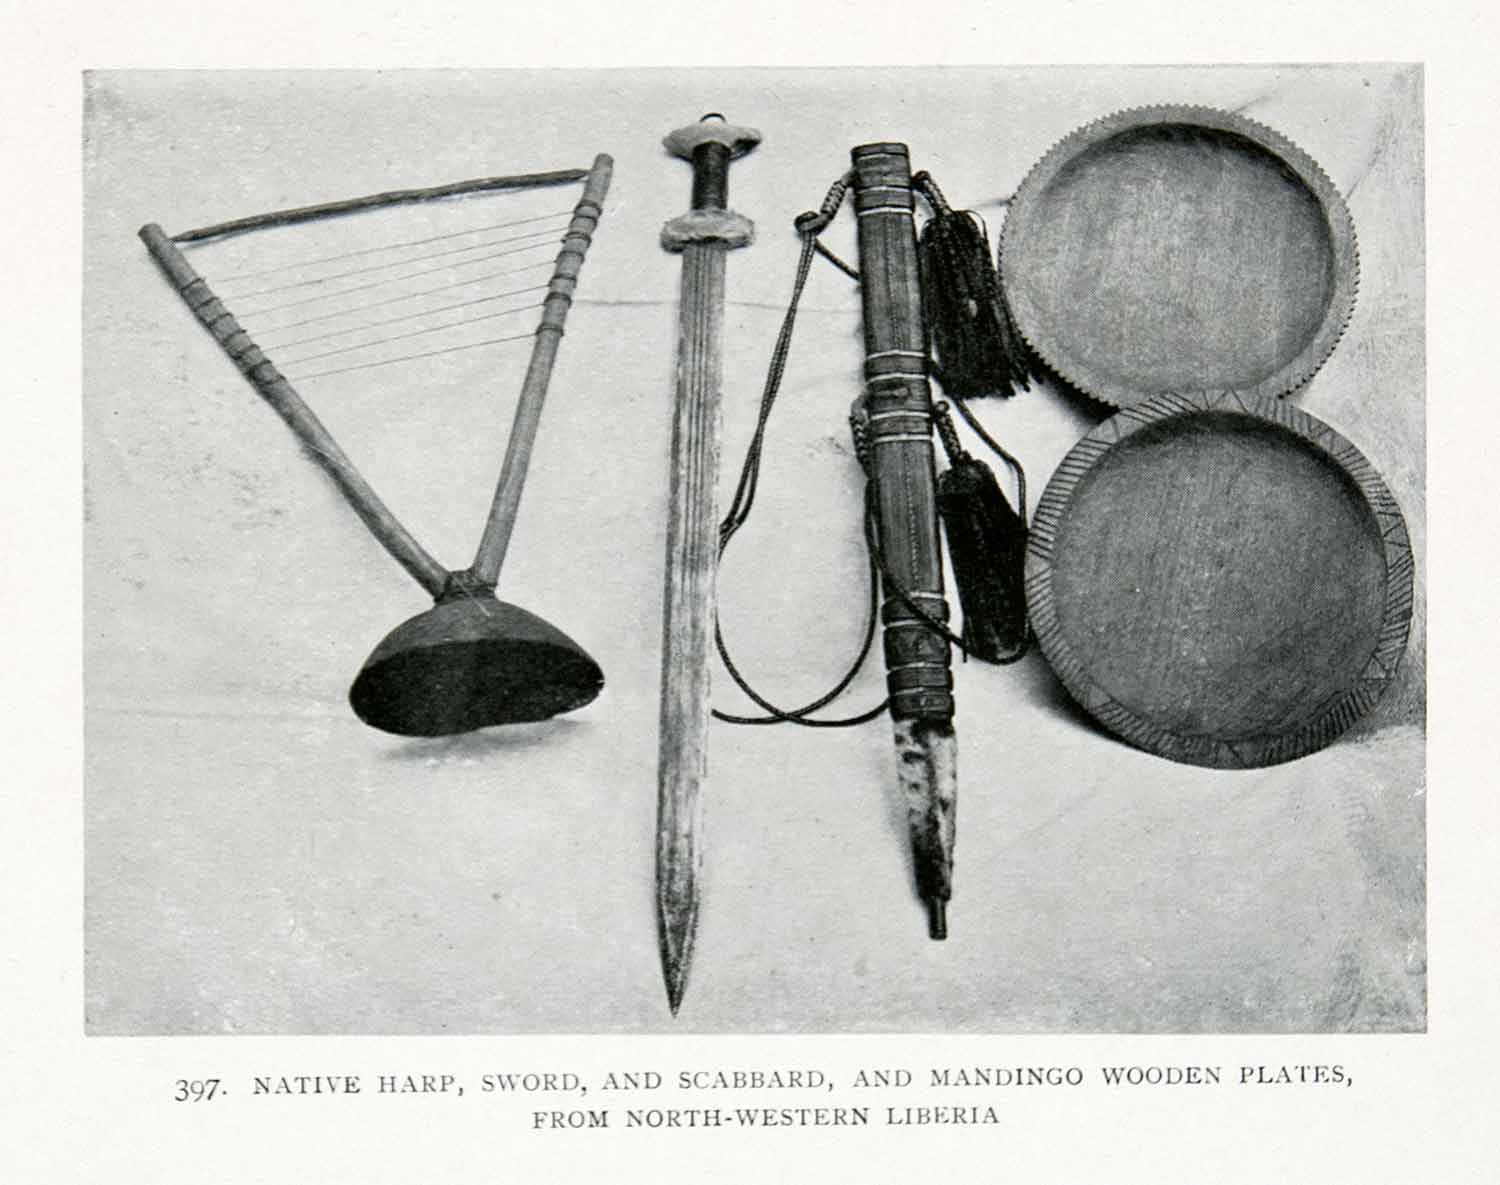 1906 Print Liberia Africa Mandingo Harp Sword Scabbard Plates Cultural XGQB5